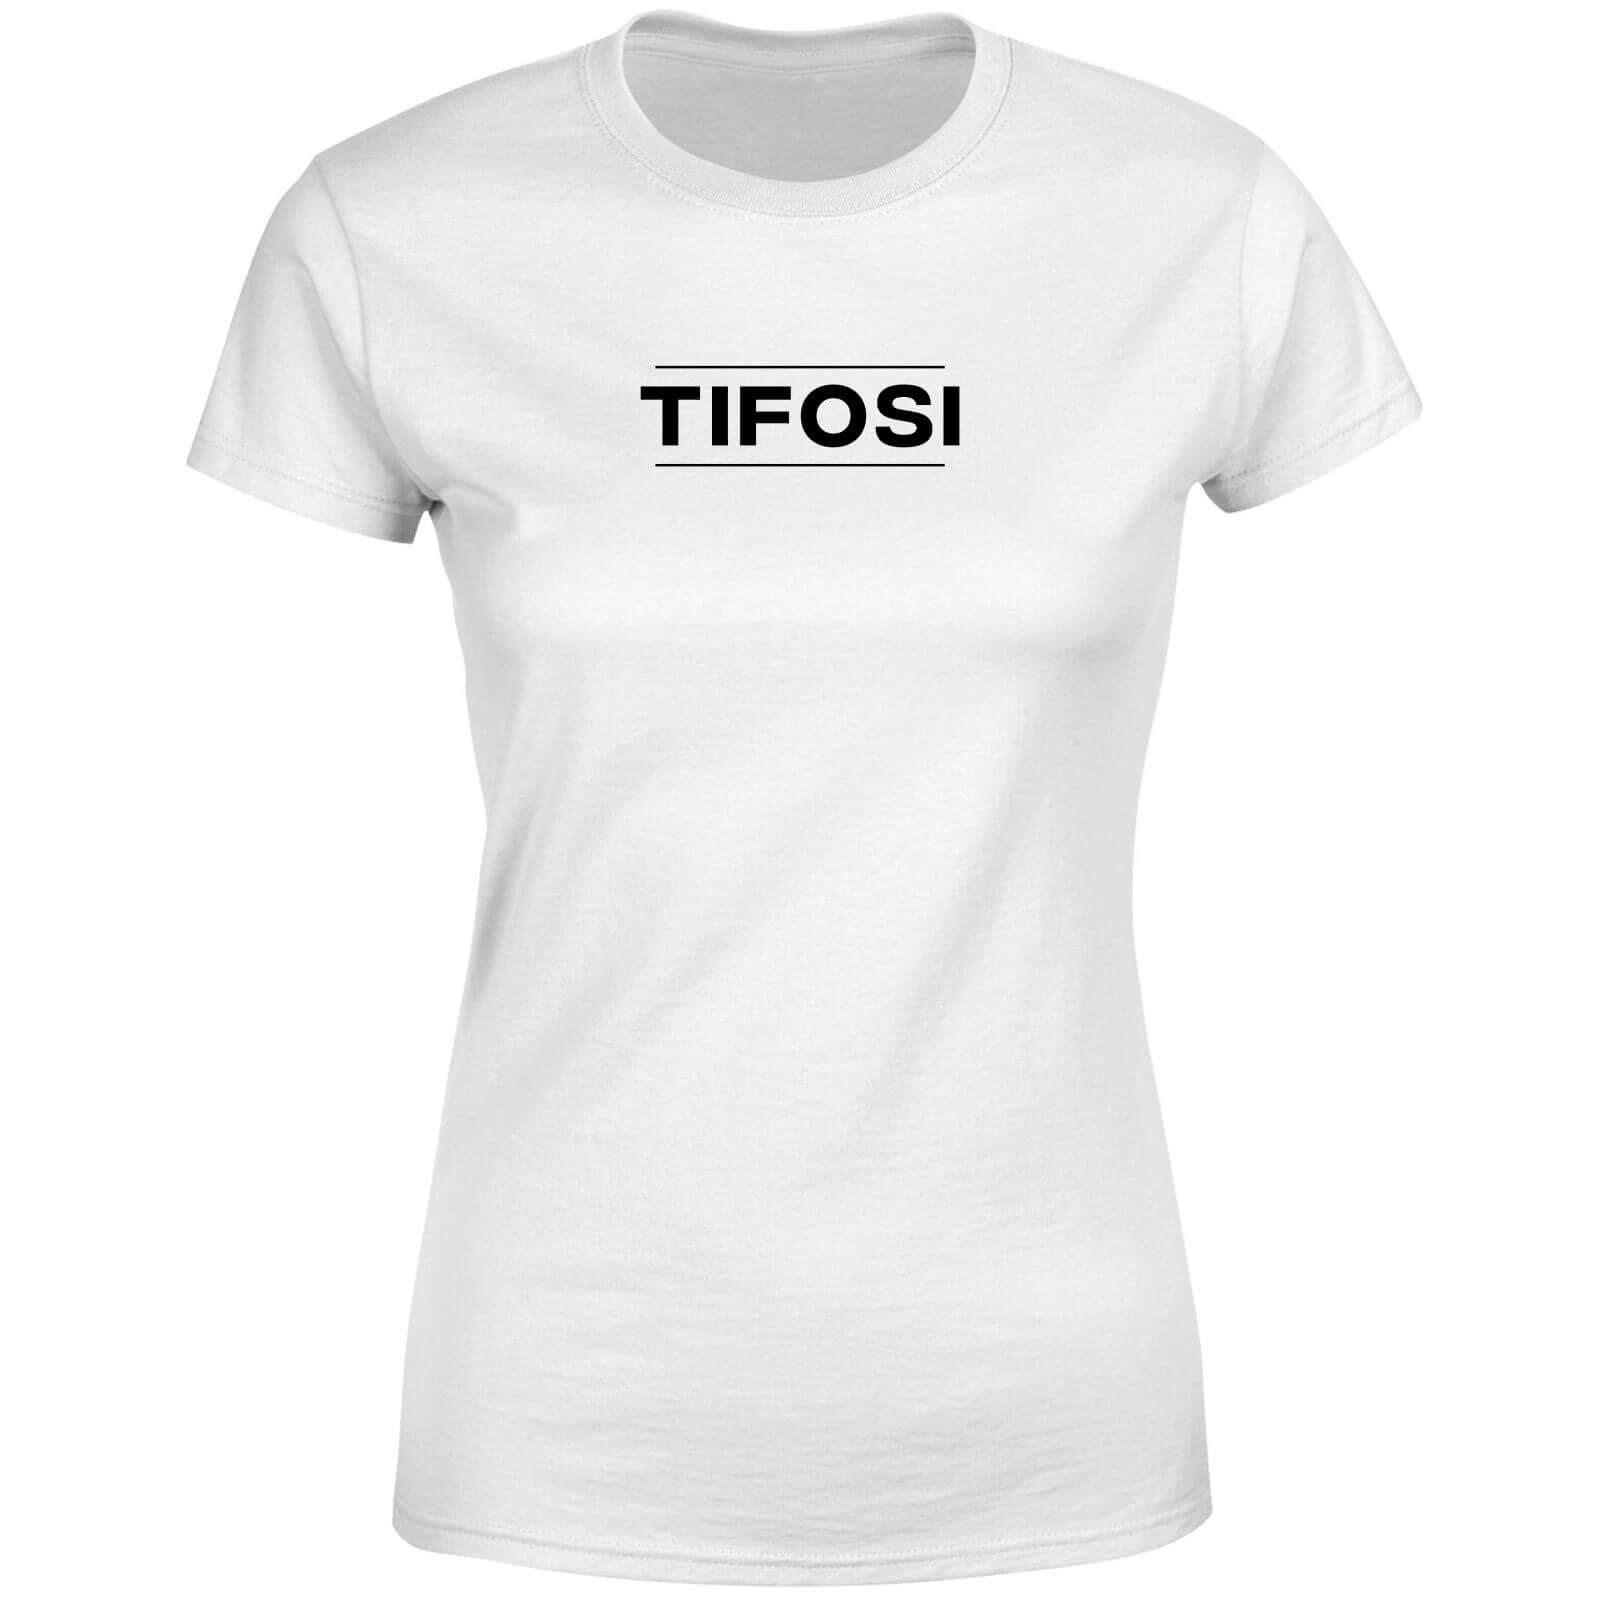 Tifosi Women's T-Shirt - White - 4XL - White